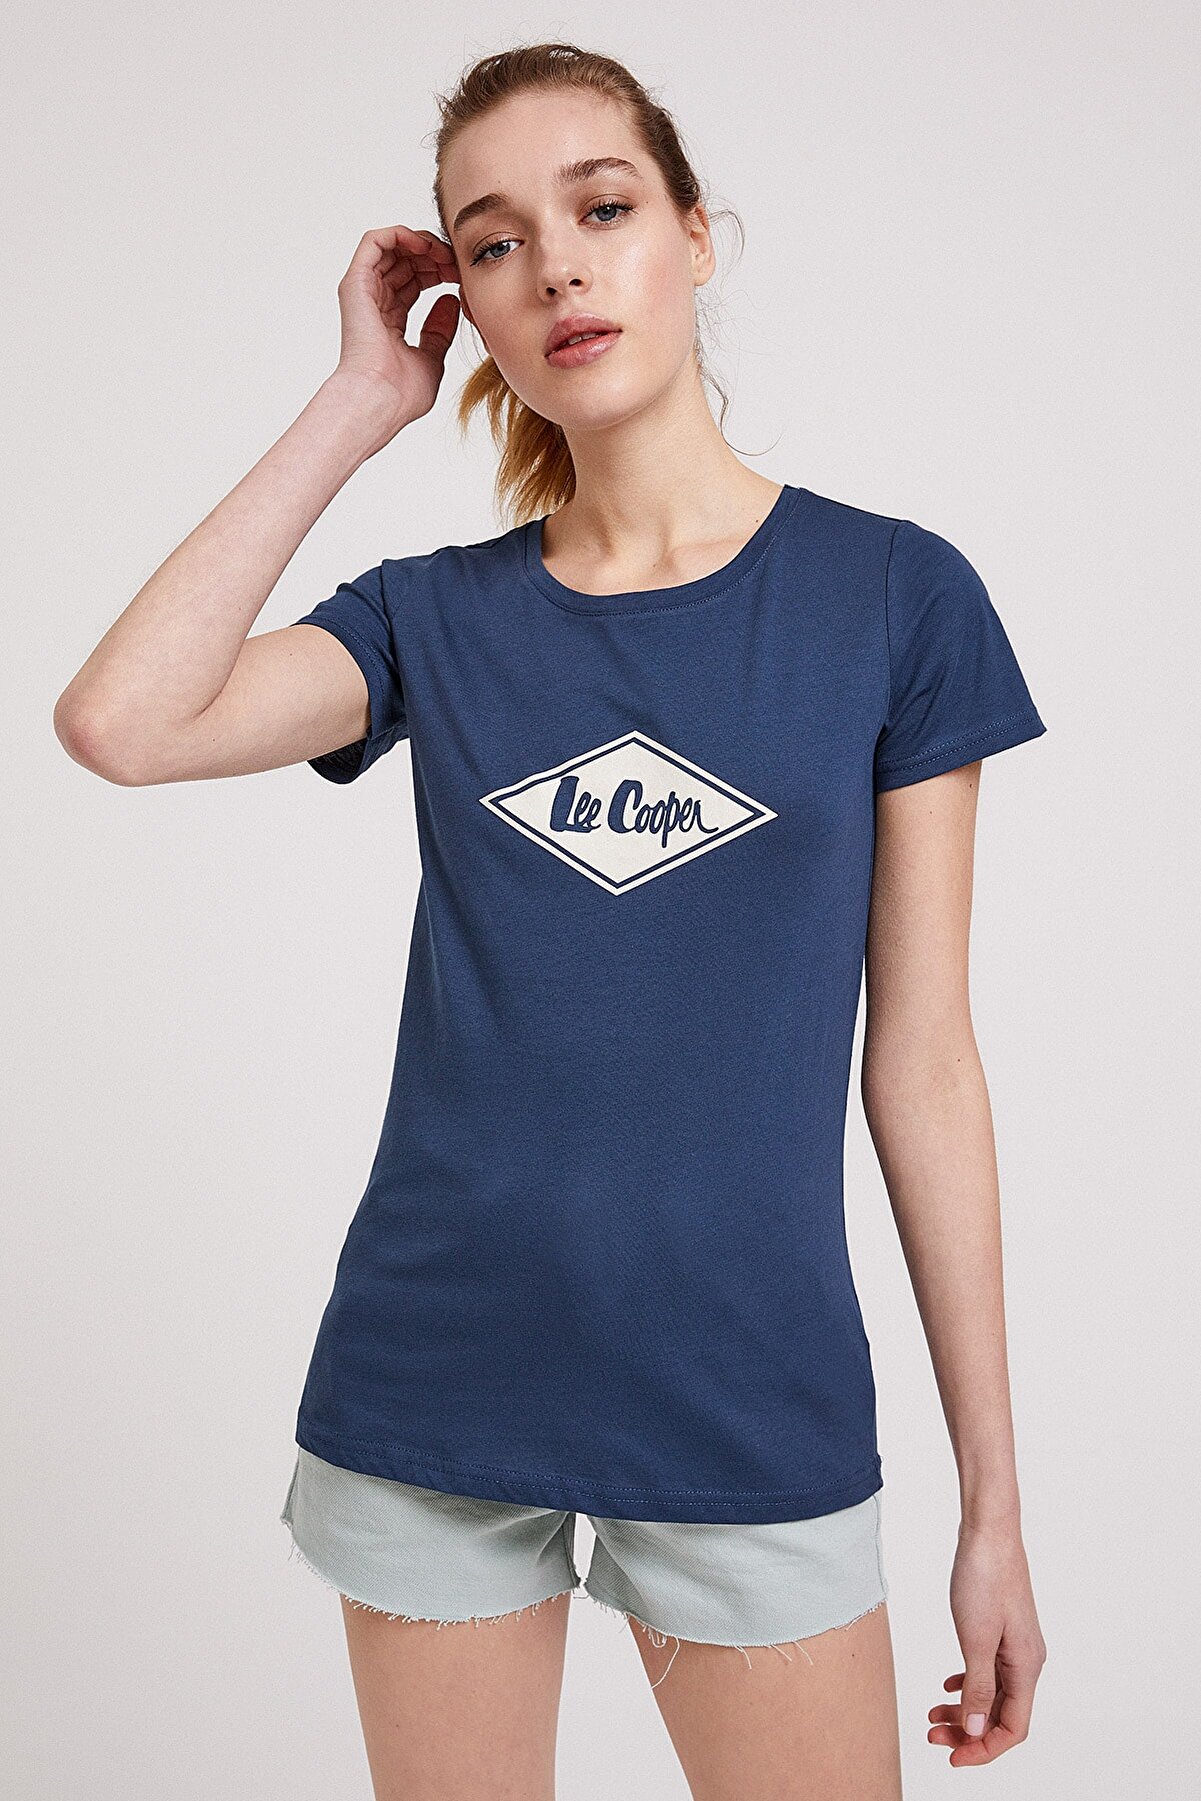 Lee Cooper Kadın Jade O Yaka T-Shirt İndigo 202 LCF 242012